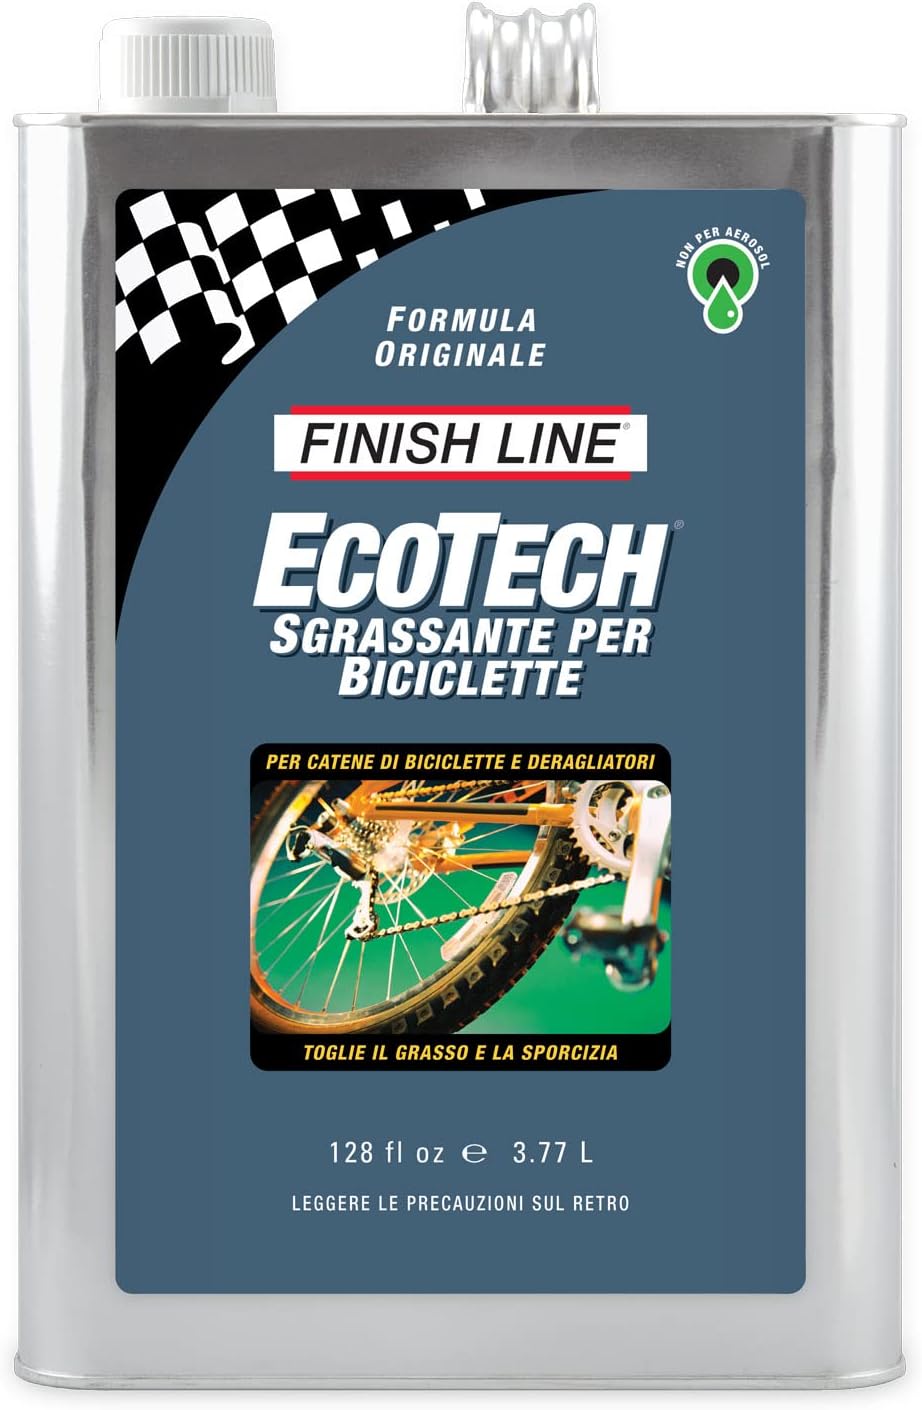 Sgrassante per Biciclette Finish Line Ecotech 3.77 L